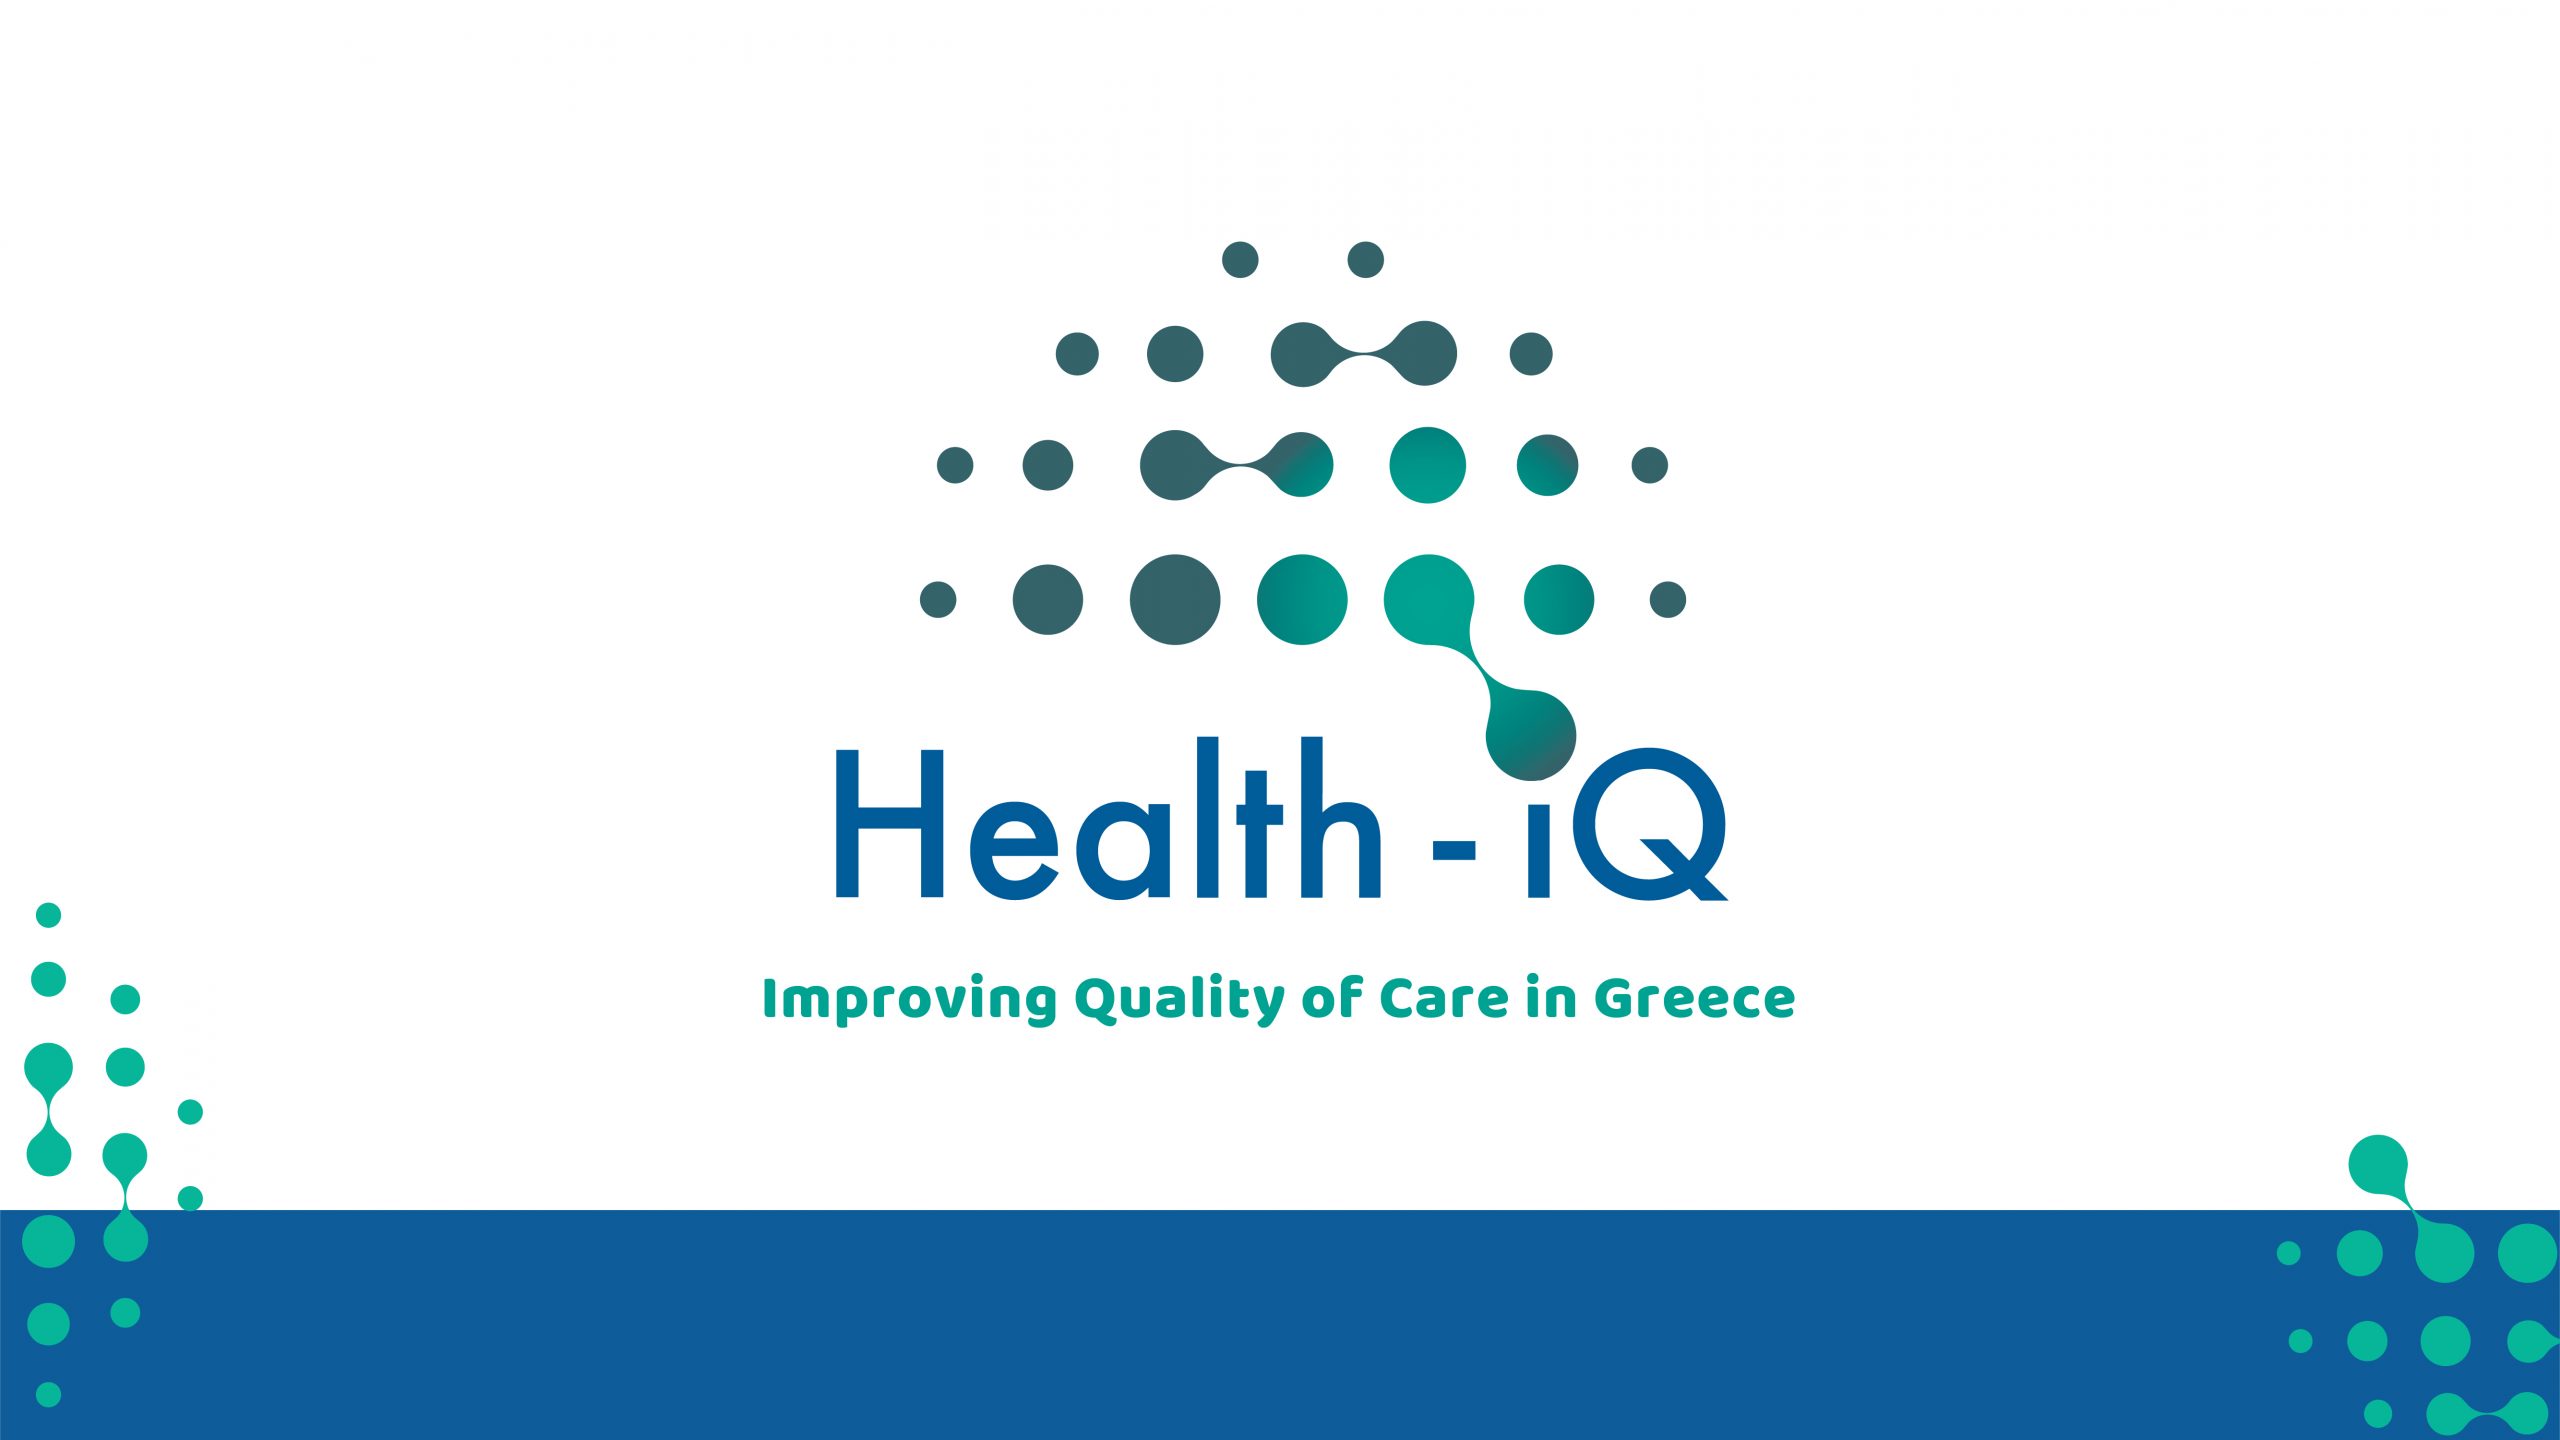 Έκδήλωση του Υπουργείου Υγείας και του ΠΟΥ/Ευρώπης για την έναρξη του  προγράμματος “Health-IQ”